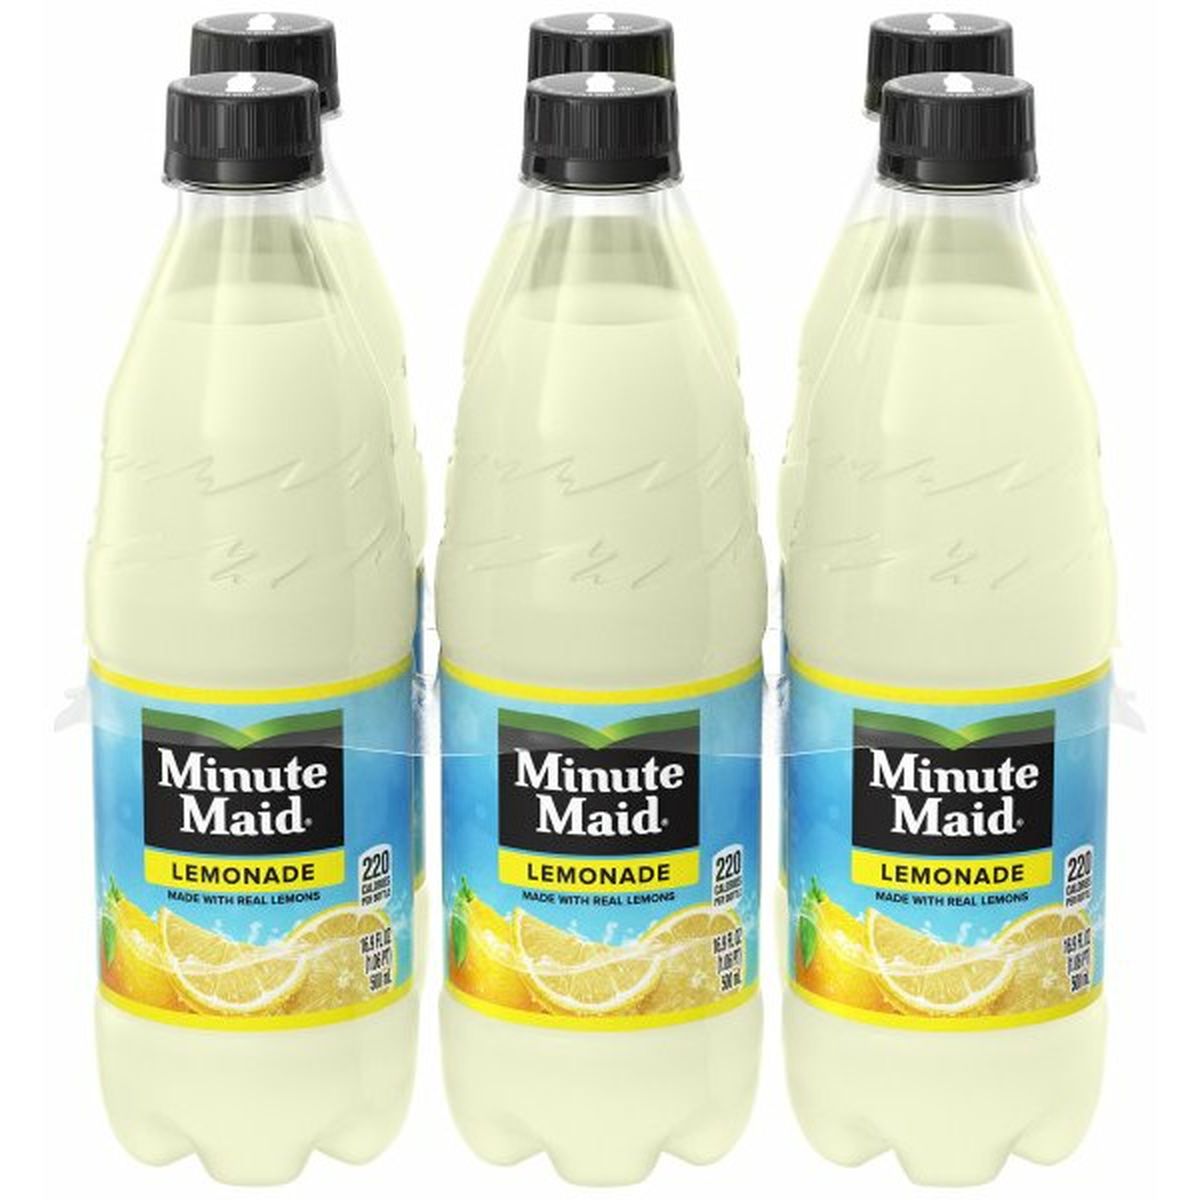 Calories in Minute Maid Lemonade